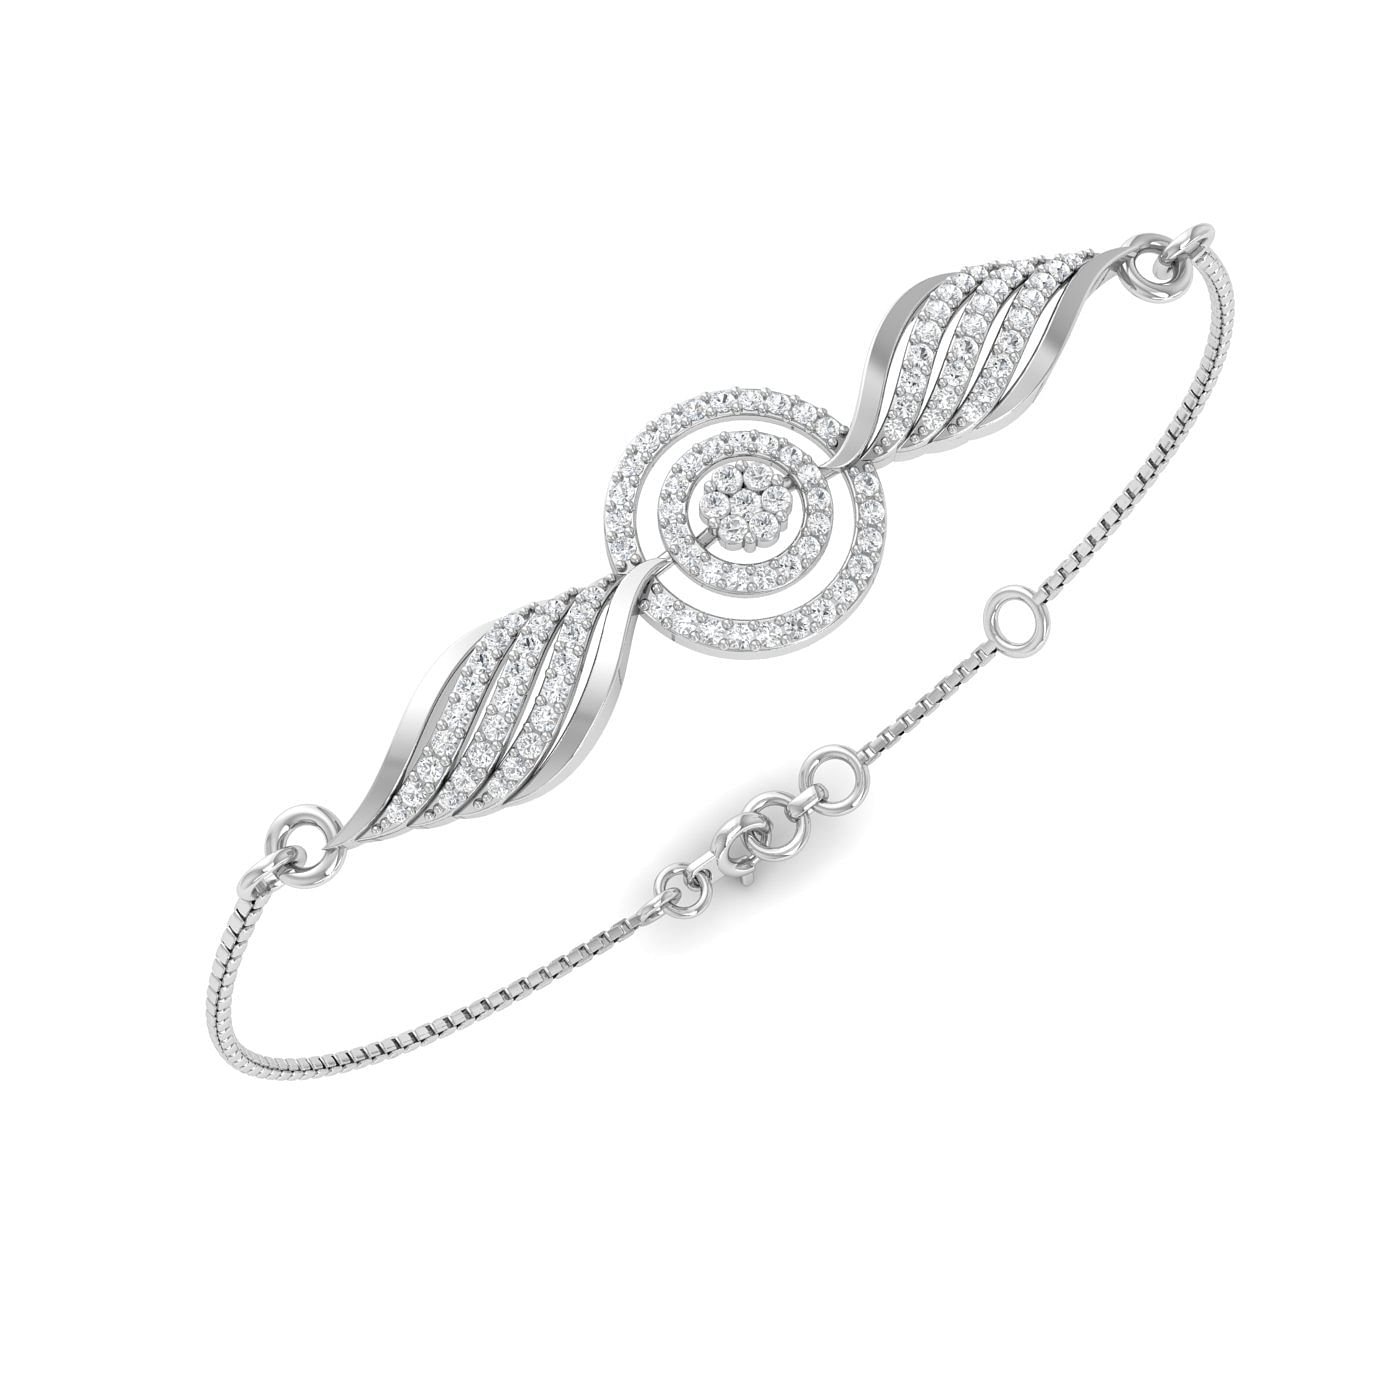 White Gold Sparkling Diamond Bracelet For Engagement Gift